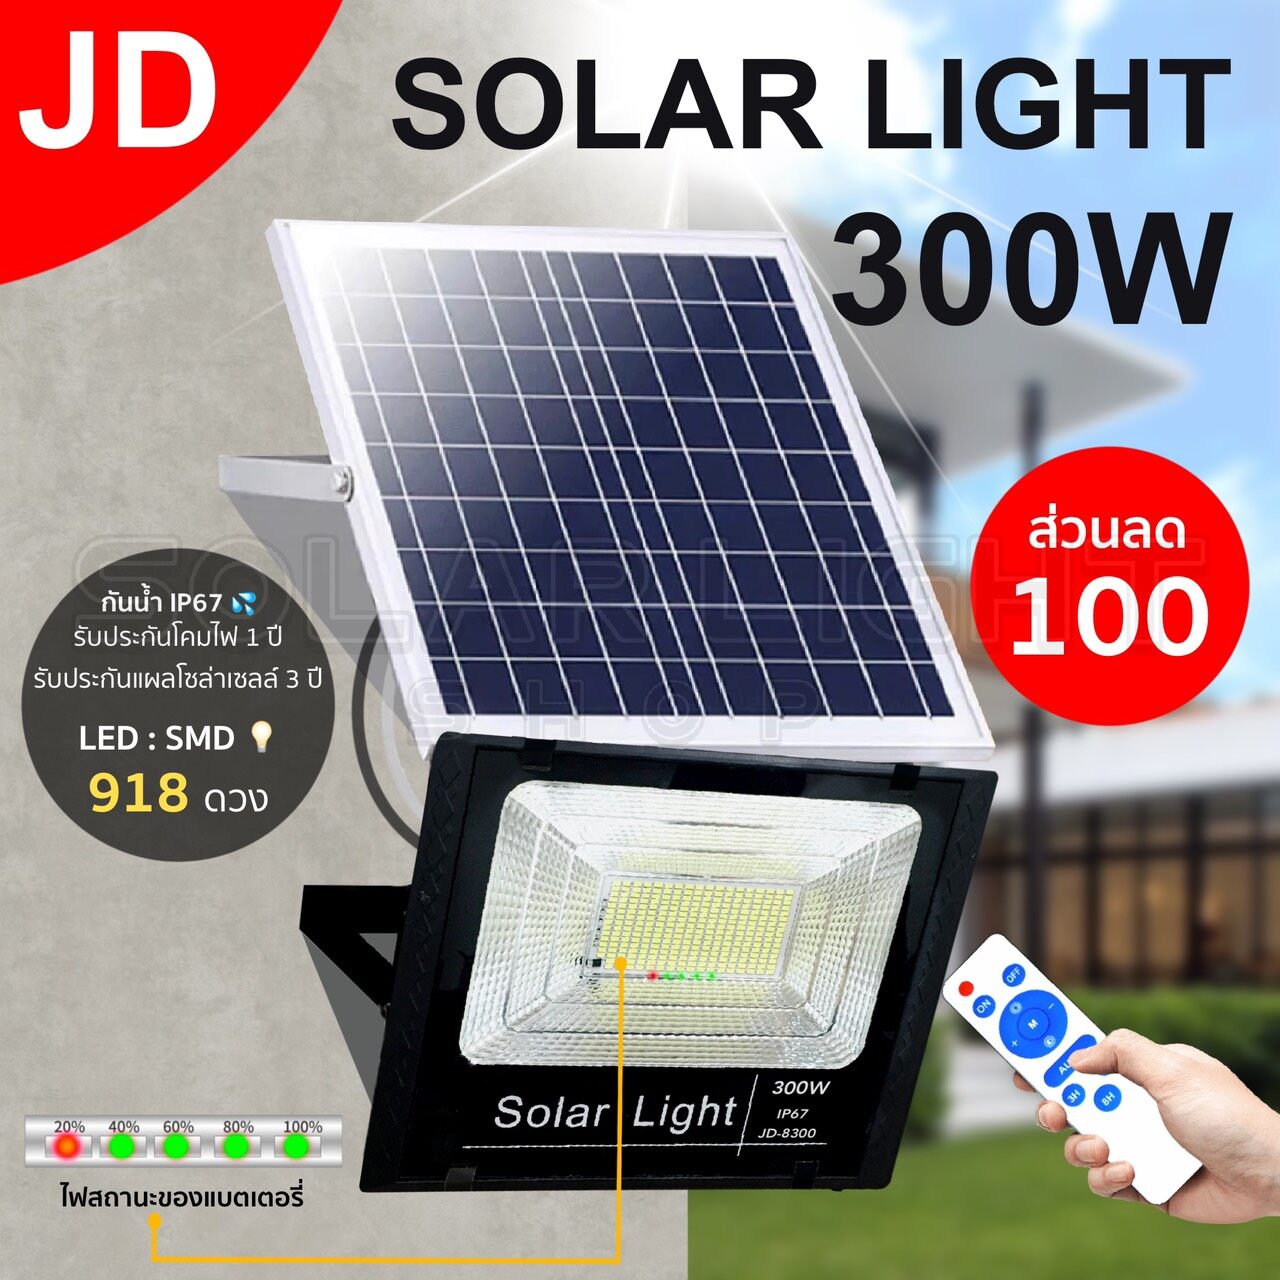 JD ไฟโซล่าเซล 45w 65w 120w 200w 300w  500w ไฟโซล่าเซลล์ solar light แสงสีเหลือง สีขาว ไฟสปอตไลท์ ไฟ solar cell กันน้ำ IP67 รับประกัน 3 ปี